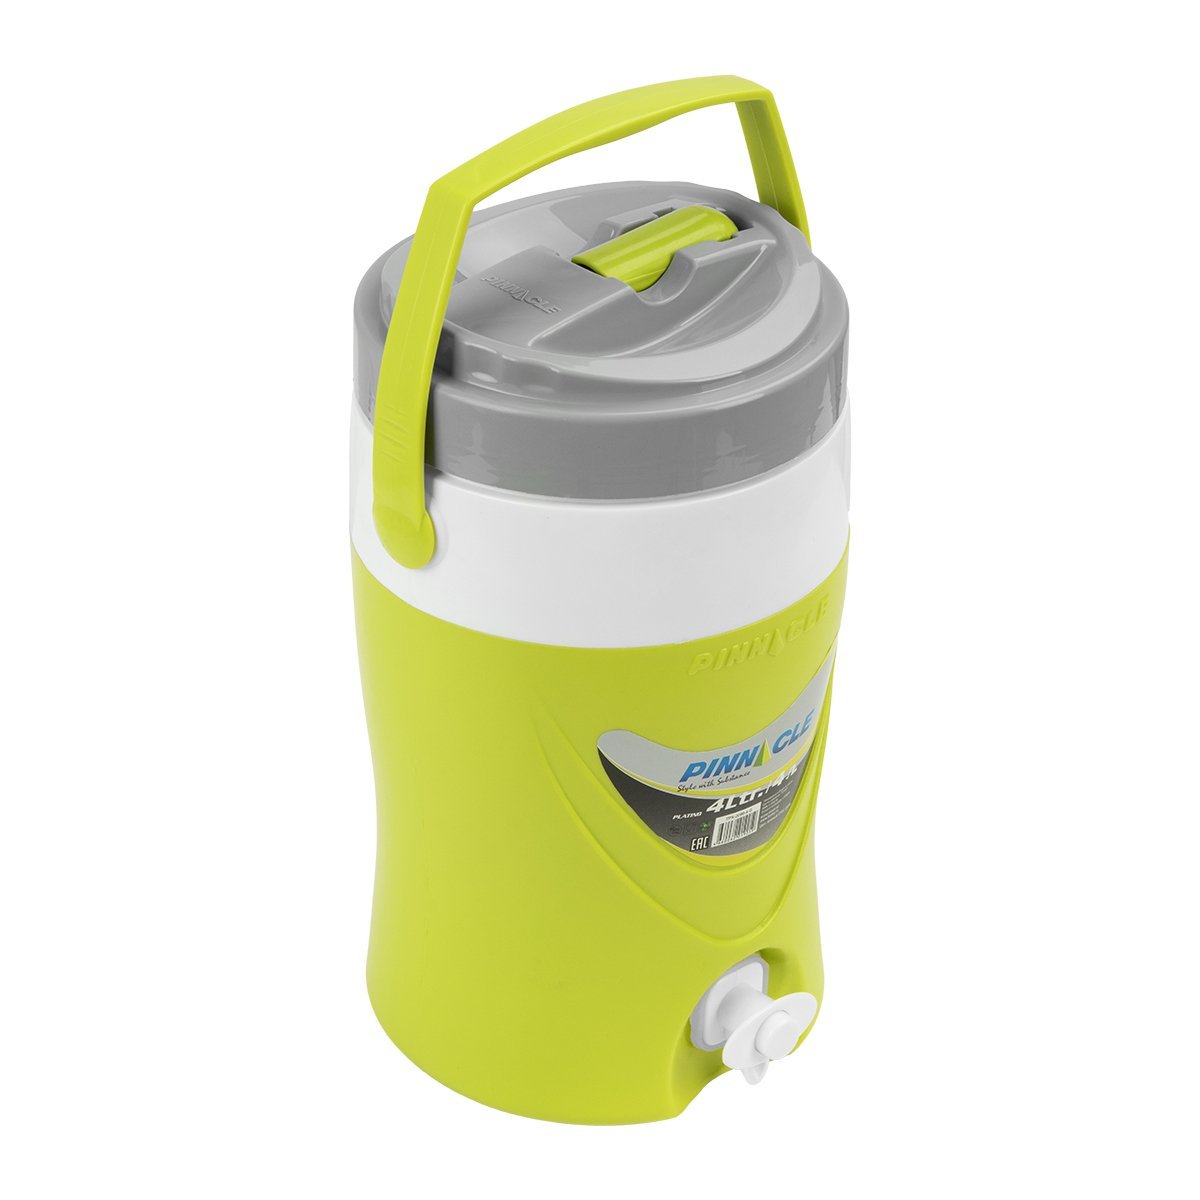 Platino Beverage Cooler Jug with Spigot for Picnics, Camping, 4 qt